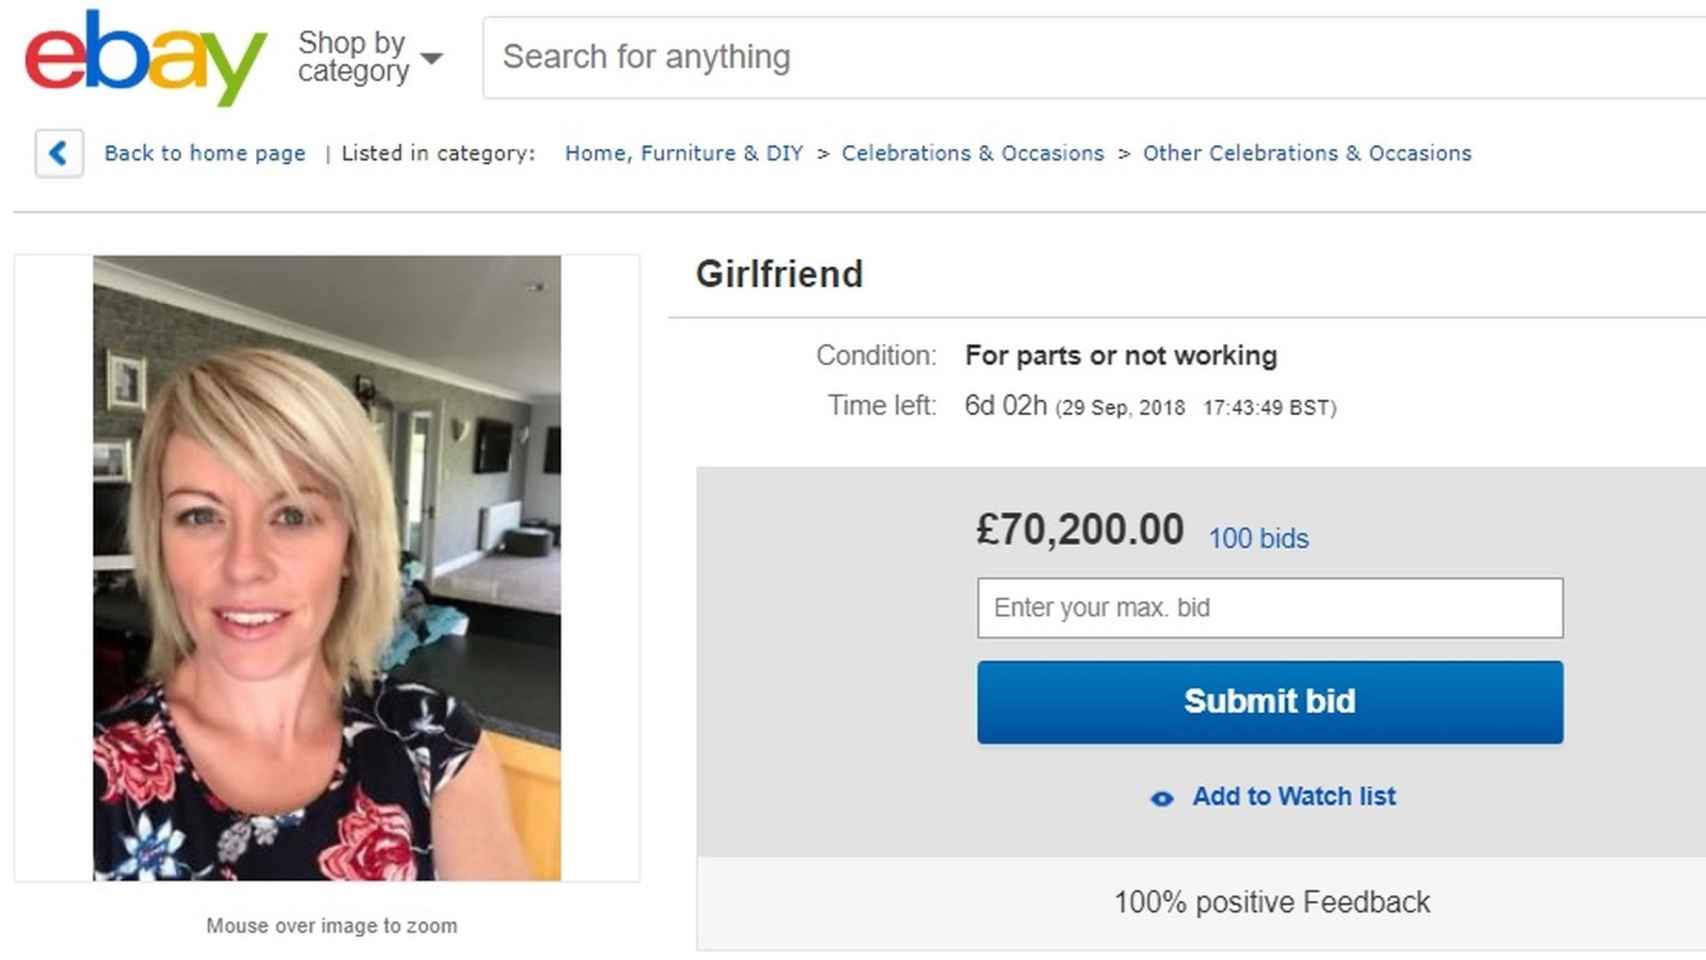 Un hombre ofrece a su novia por eBay (y sale mal)